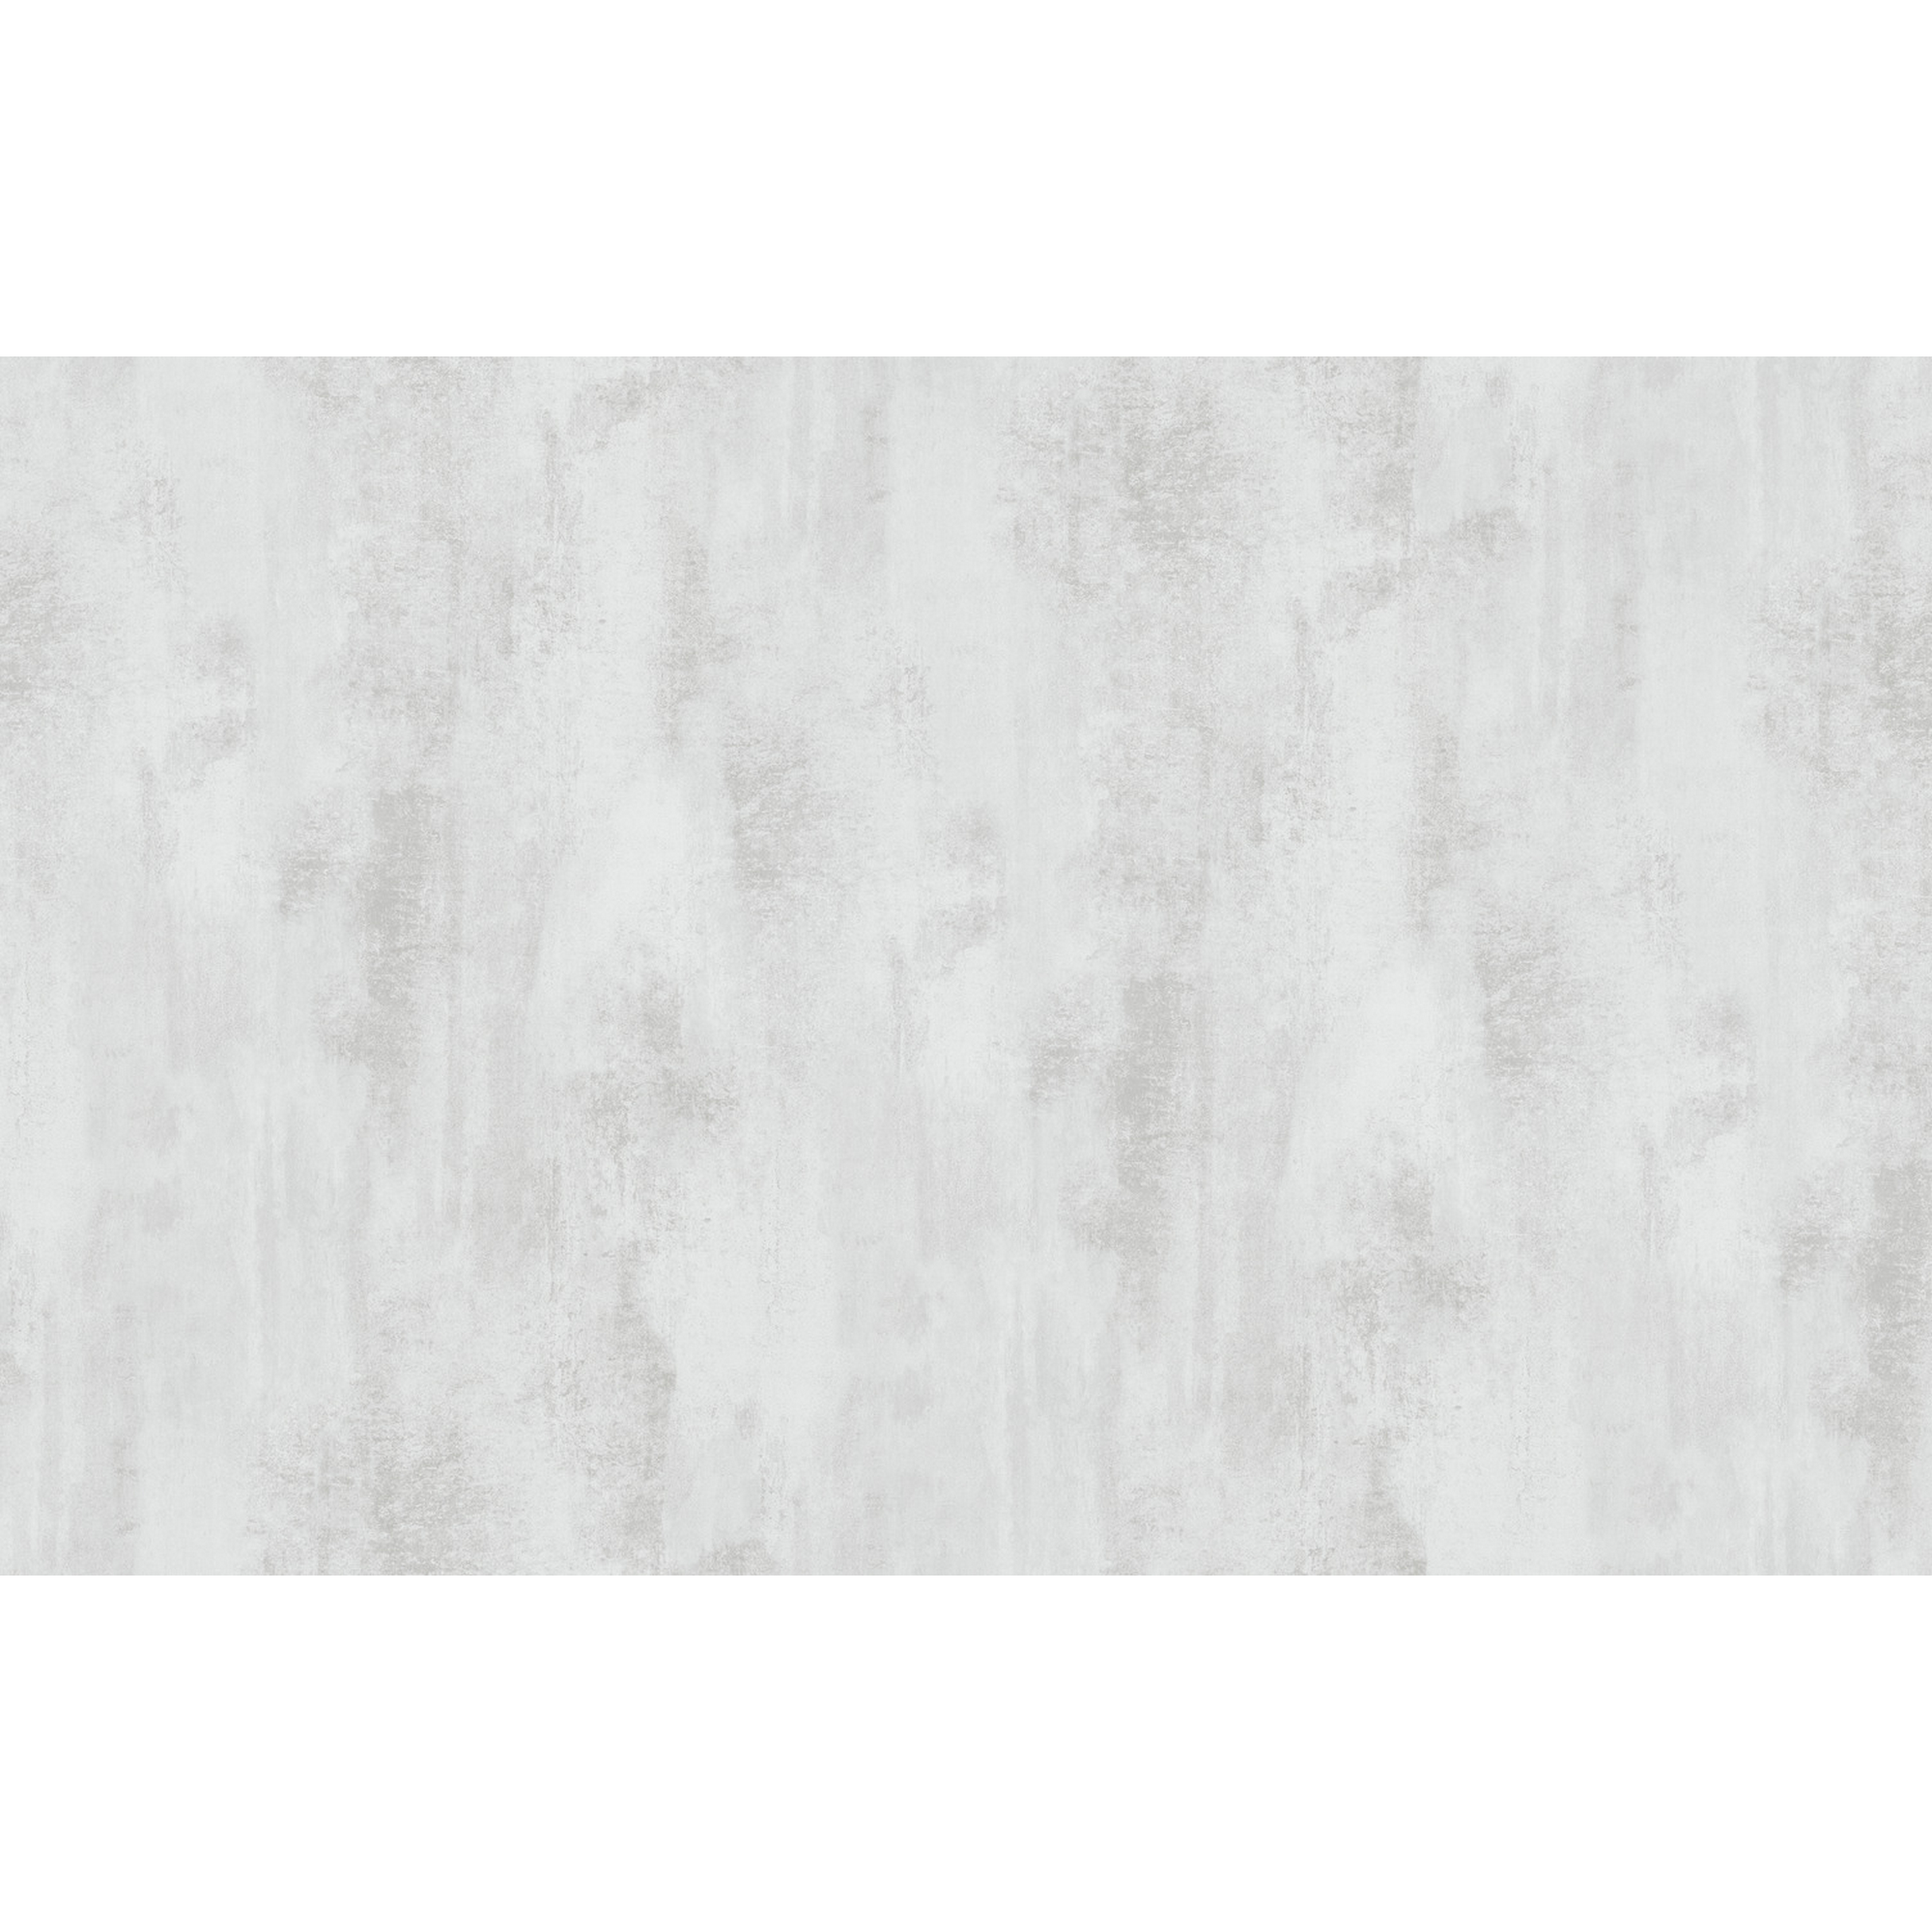 Klebefolie 'Concrete white' grau/weiß Betonoptik 45 x 200 cm + product picture